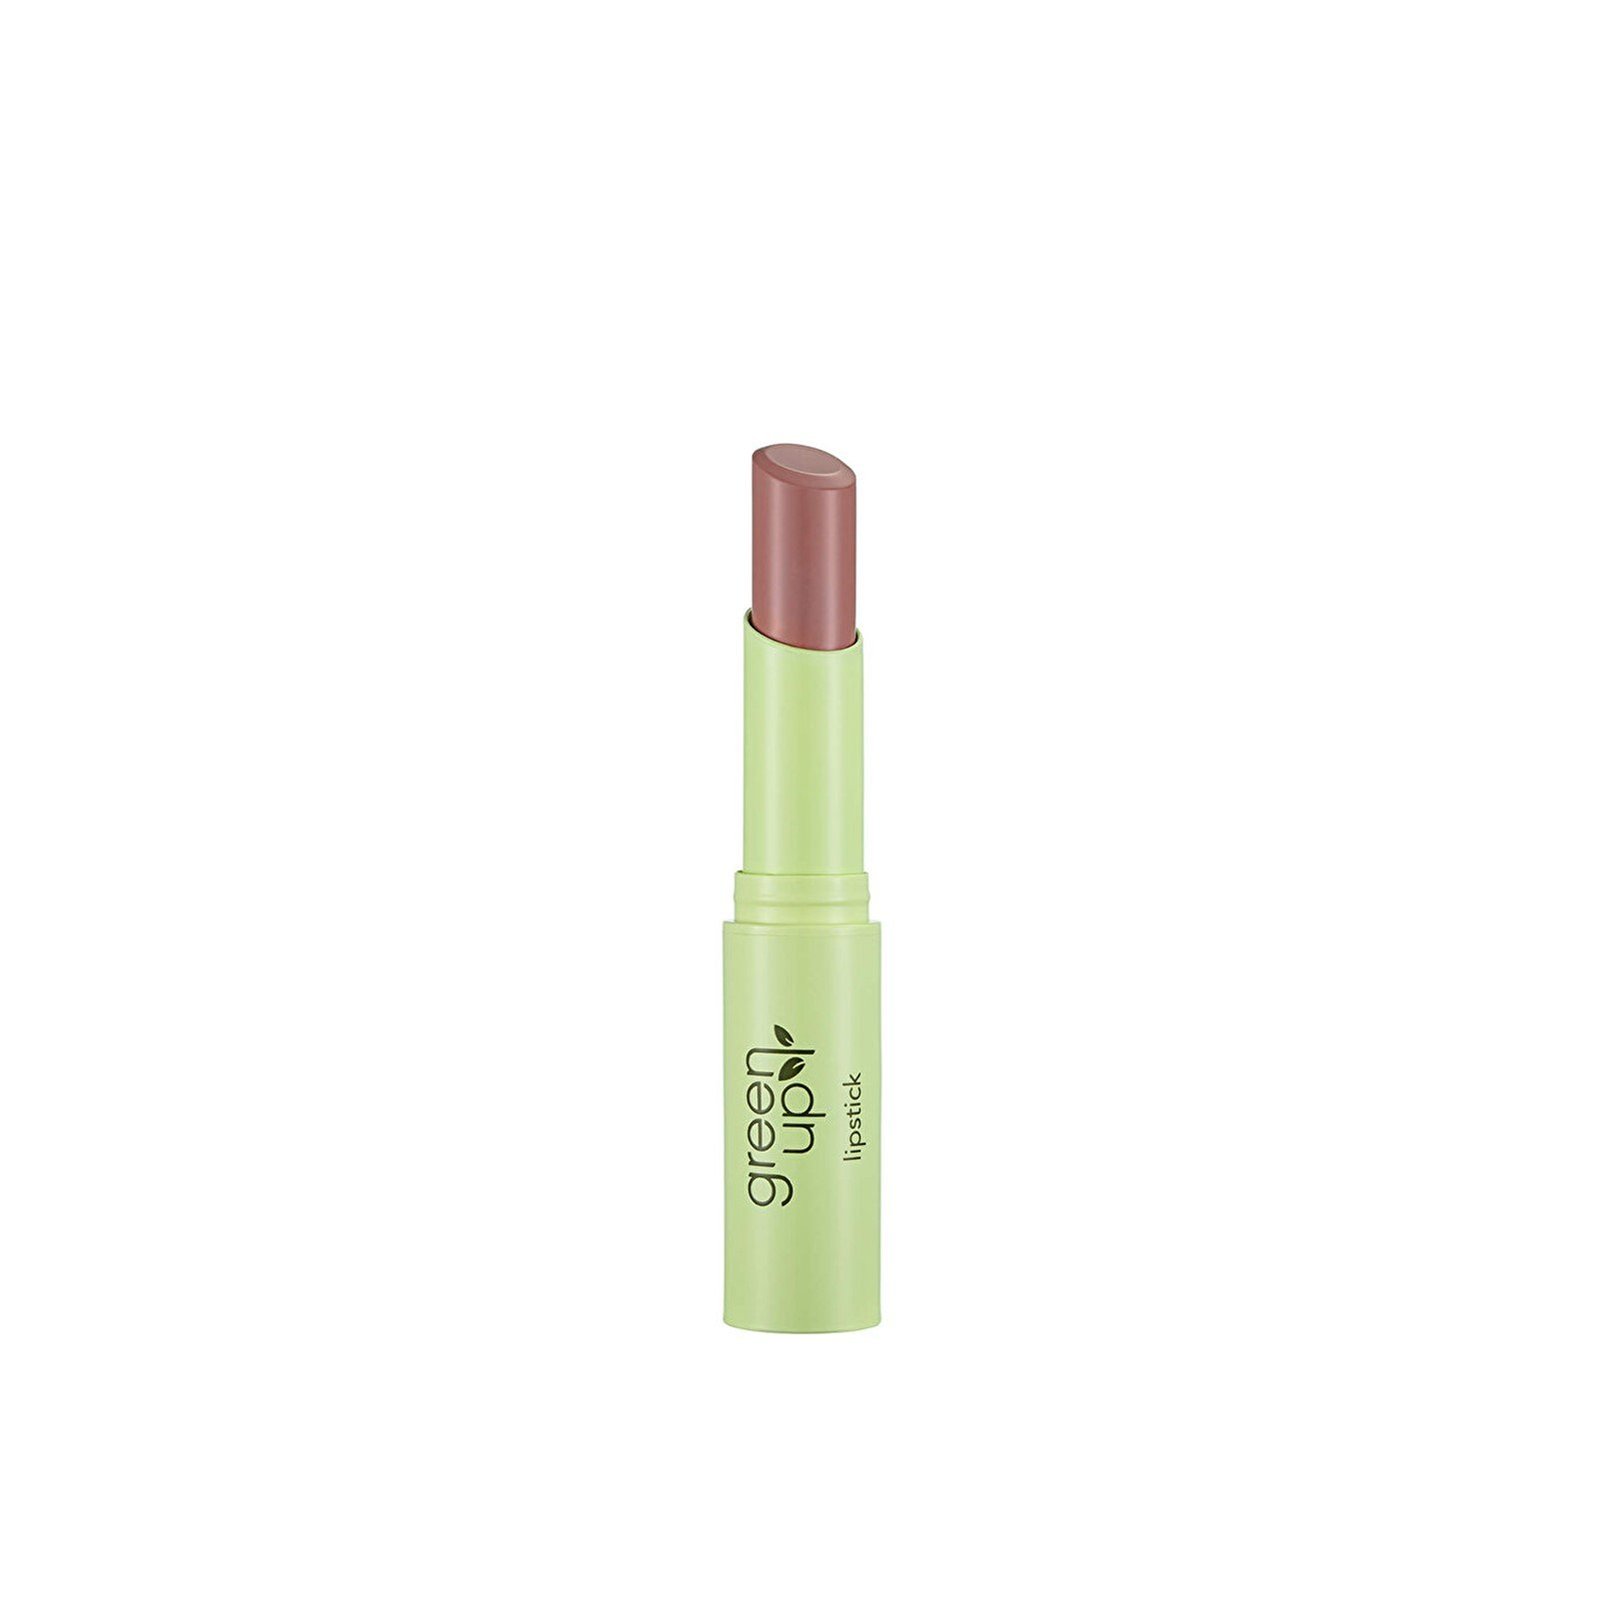 Flormar Green Up Lipstick 001 Nude Beauty 3g